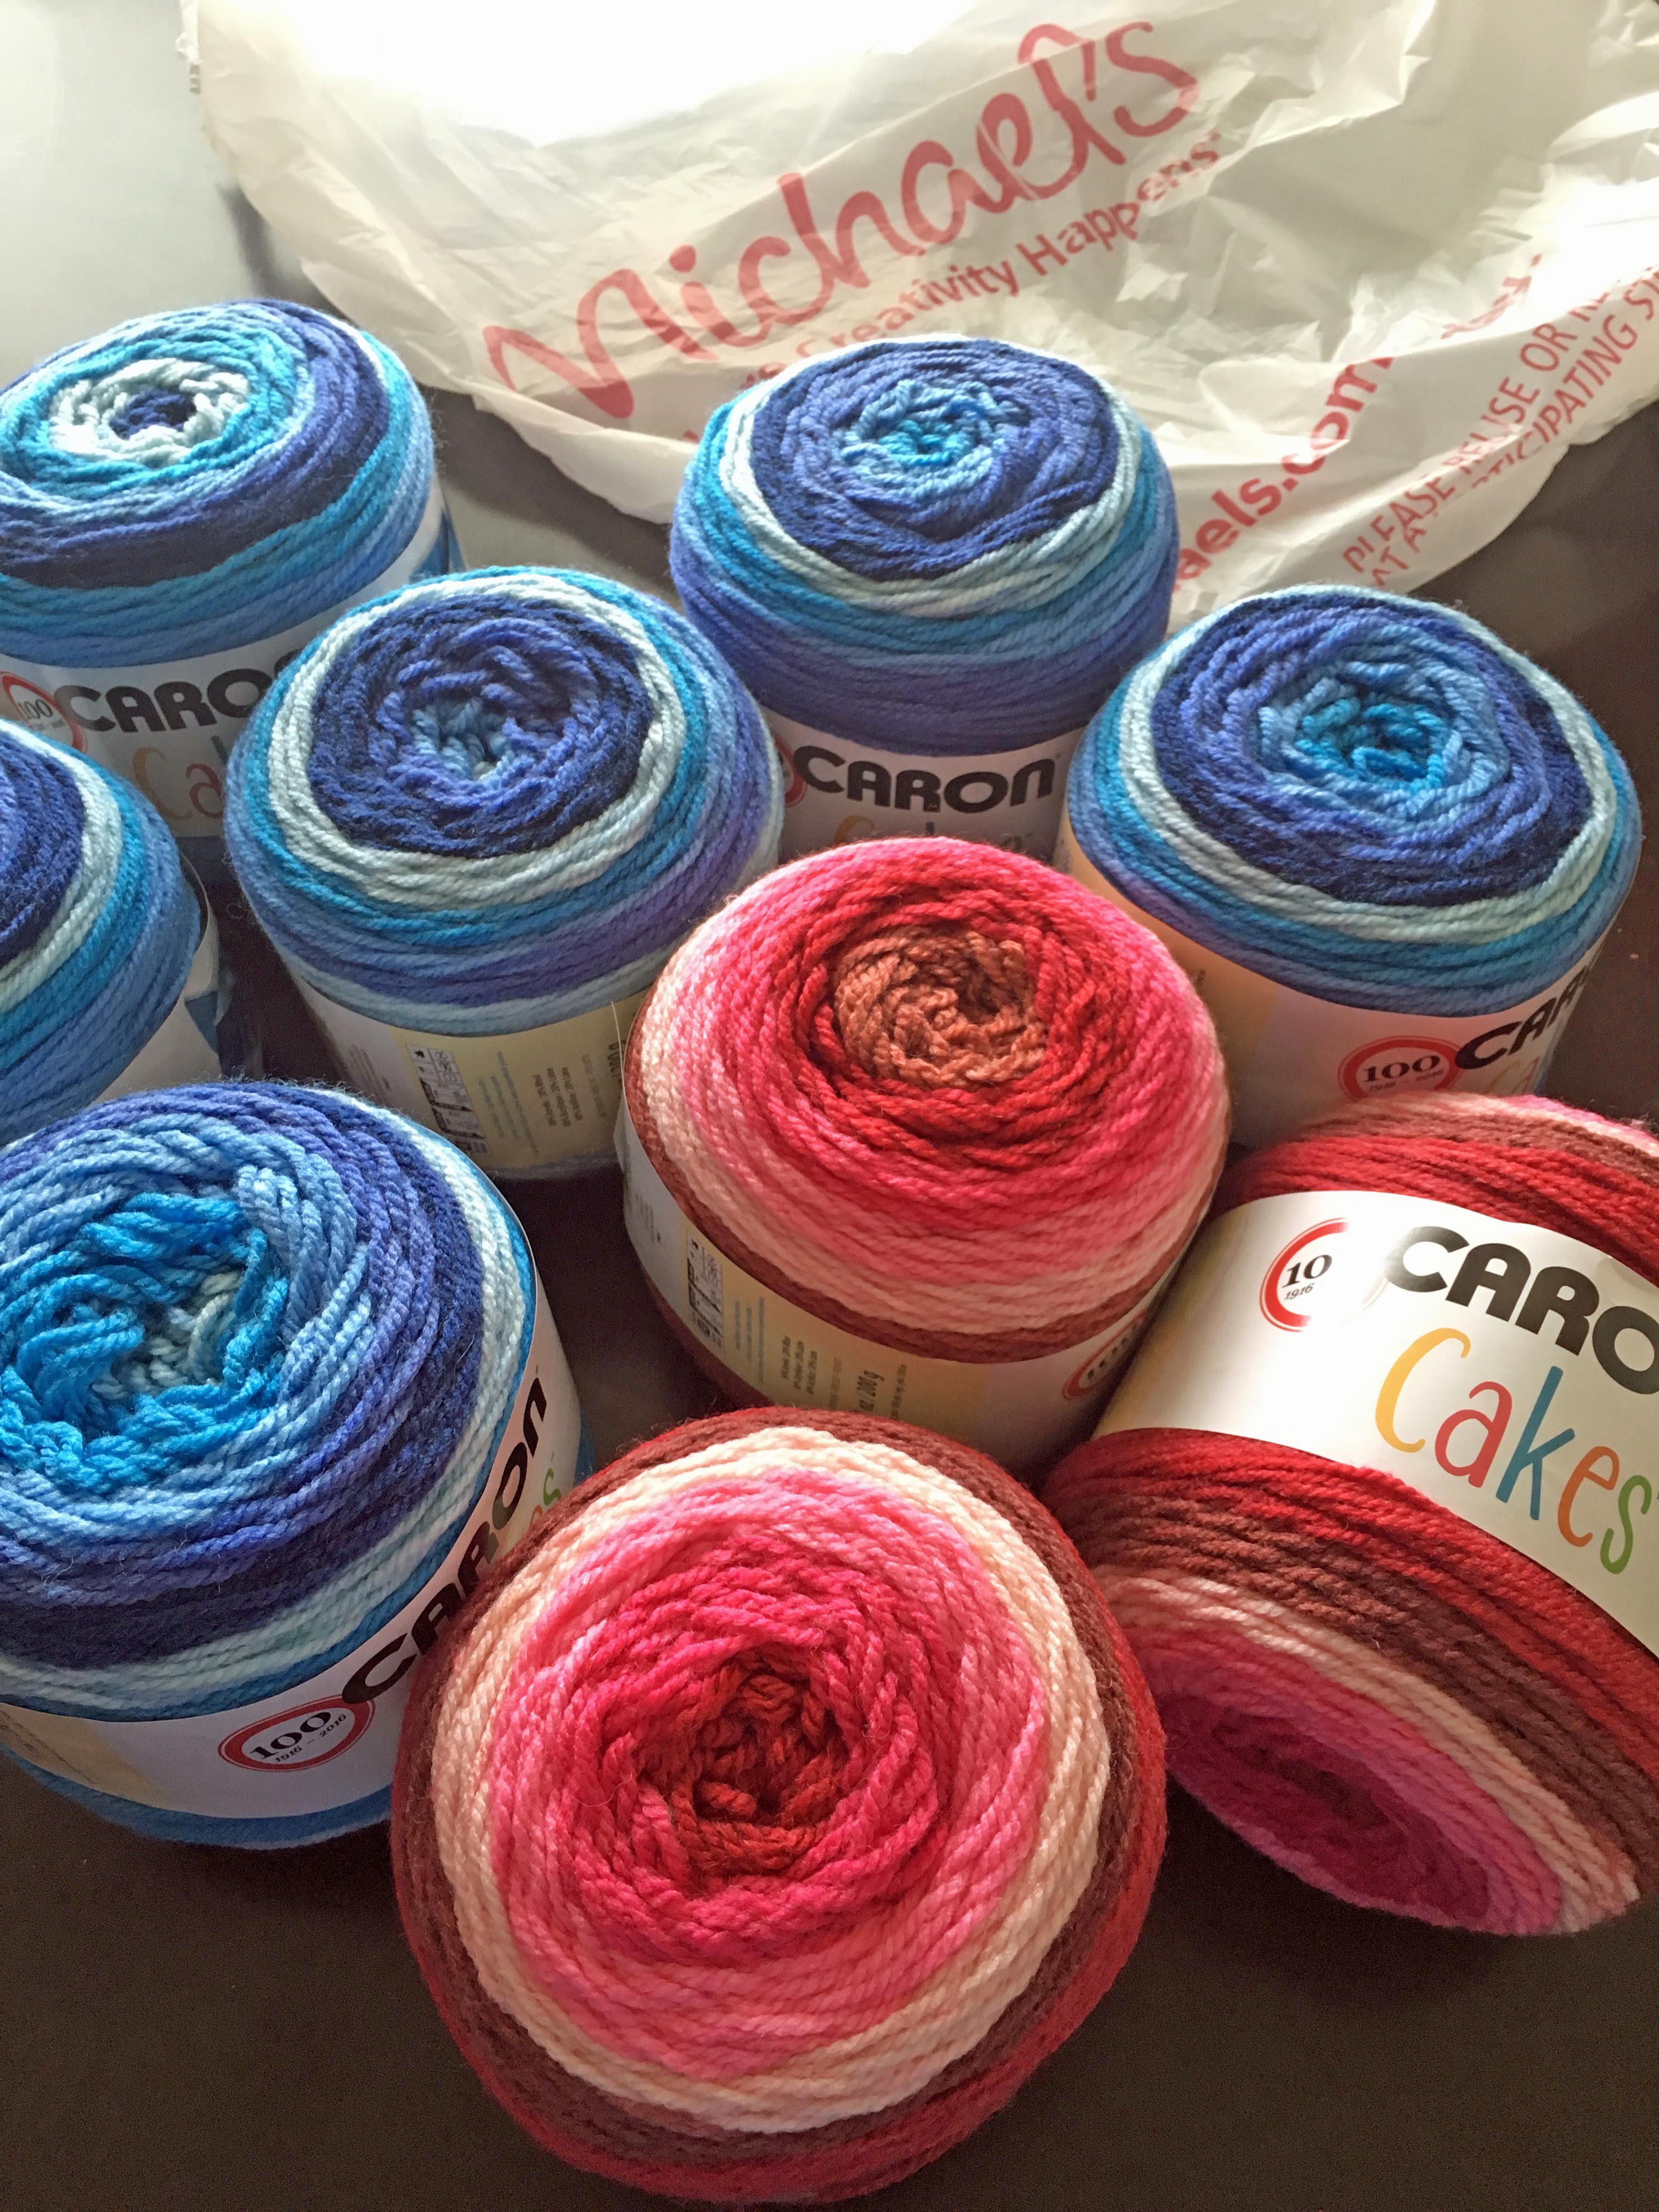 Caron Cakes Knitting Yarn 200g - Fruit Cake | Catch.com.au